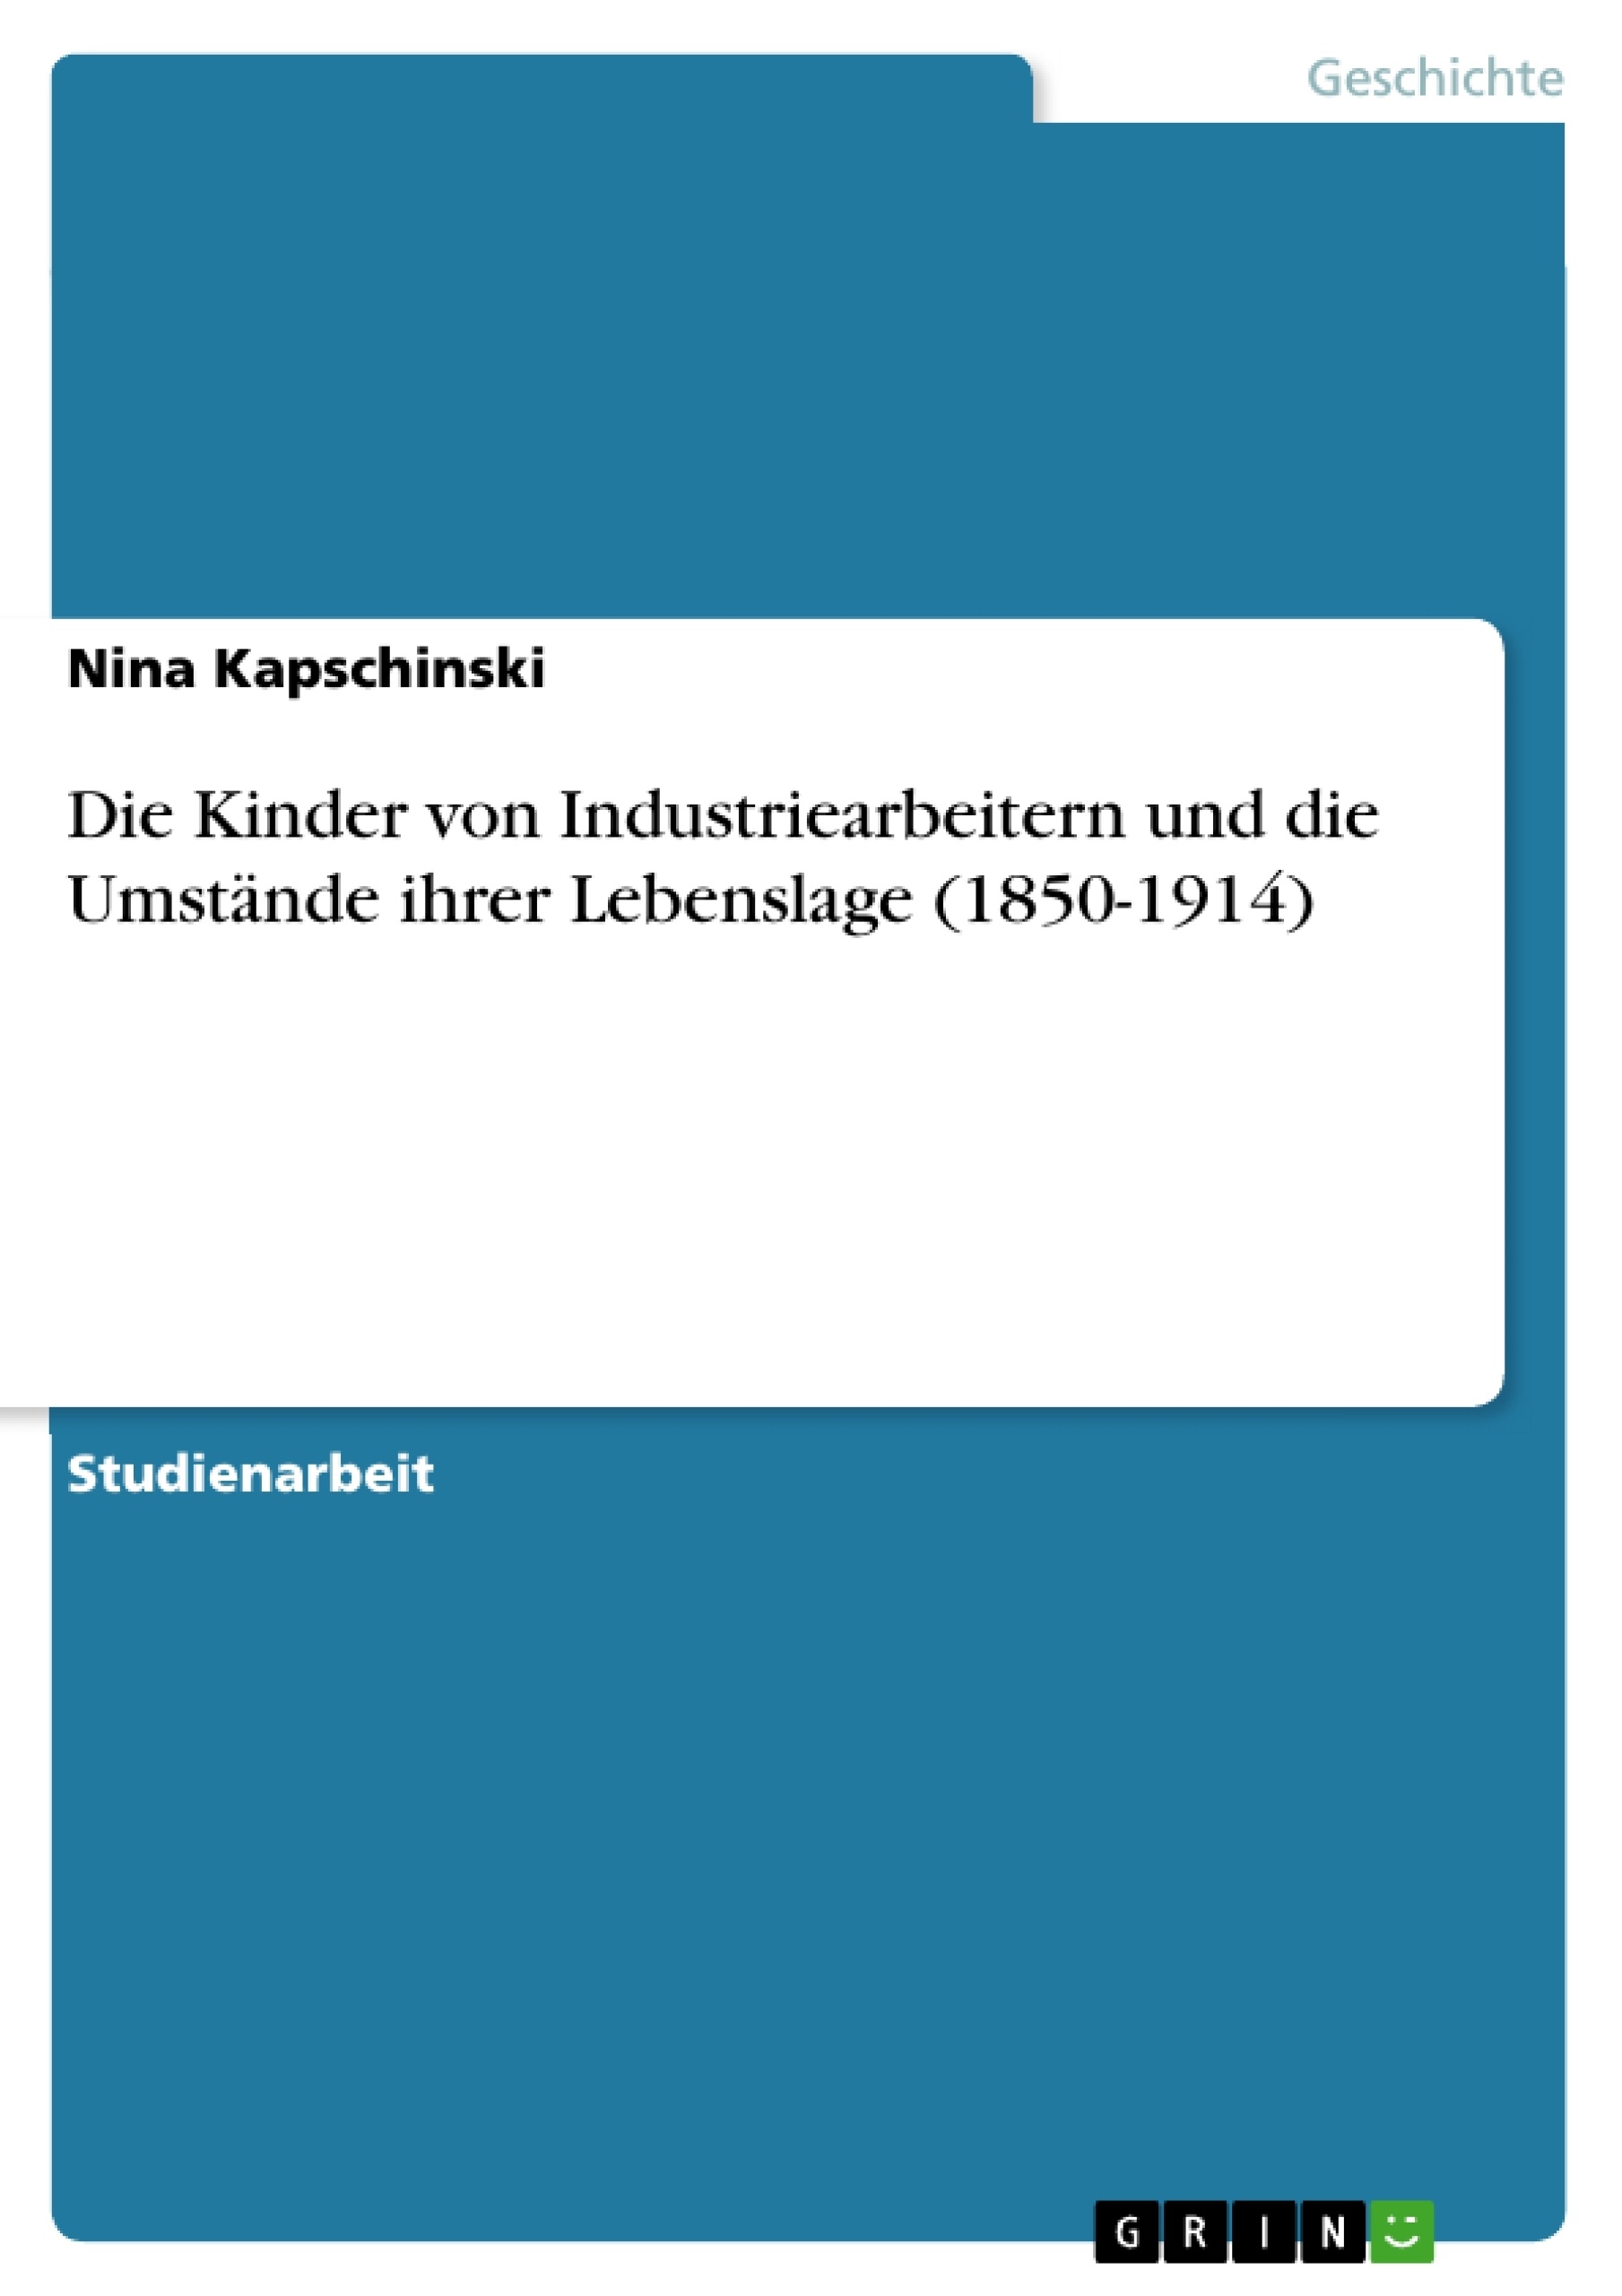 Titre: Die Kinder von Industriearbeitern und die Umstände ihrer Lebenslage (1850-1914)